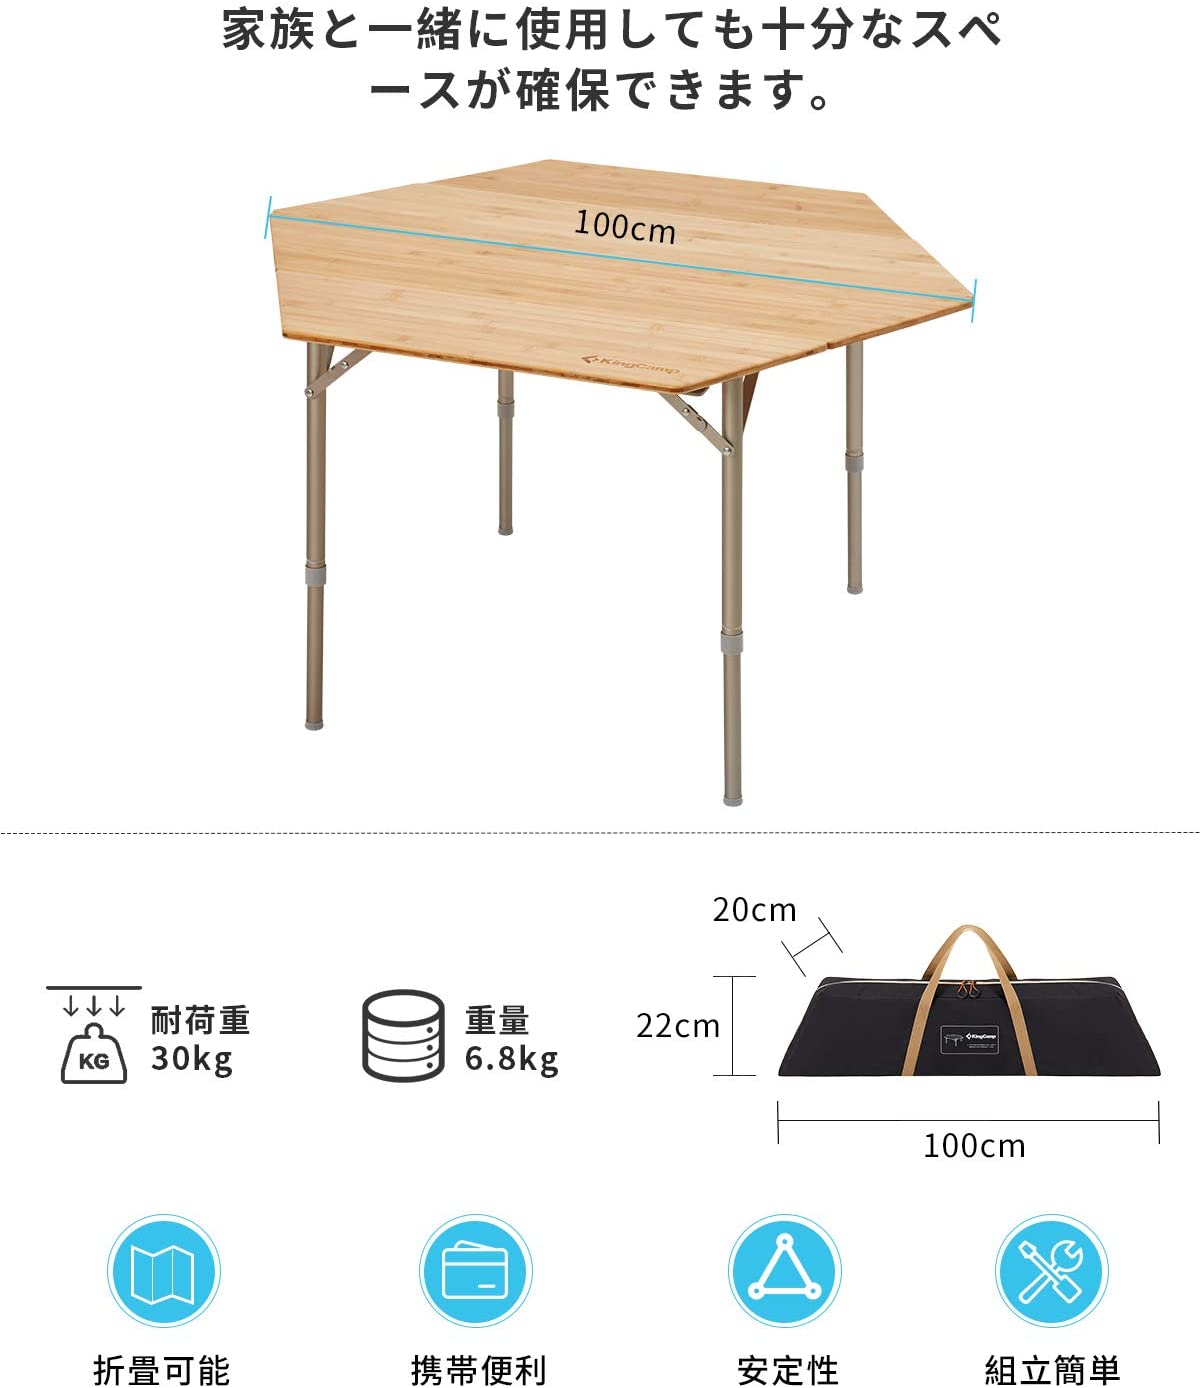 日本初六角テーブル】 KingCamp アウトドアテーブル 六角型 竹製天板 ...